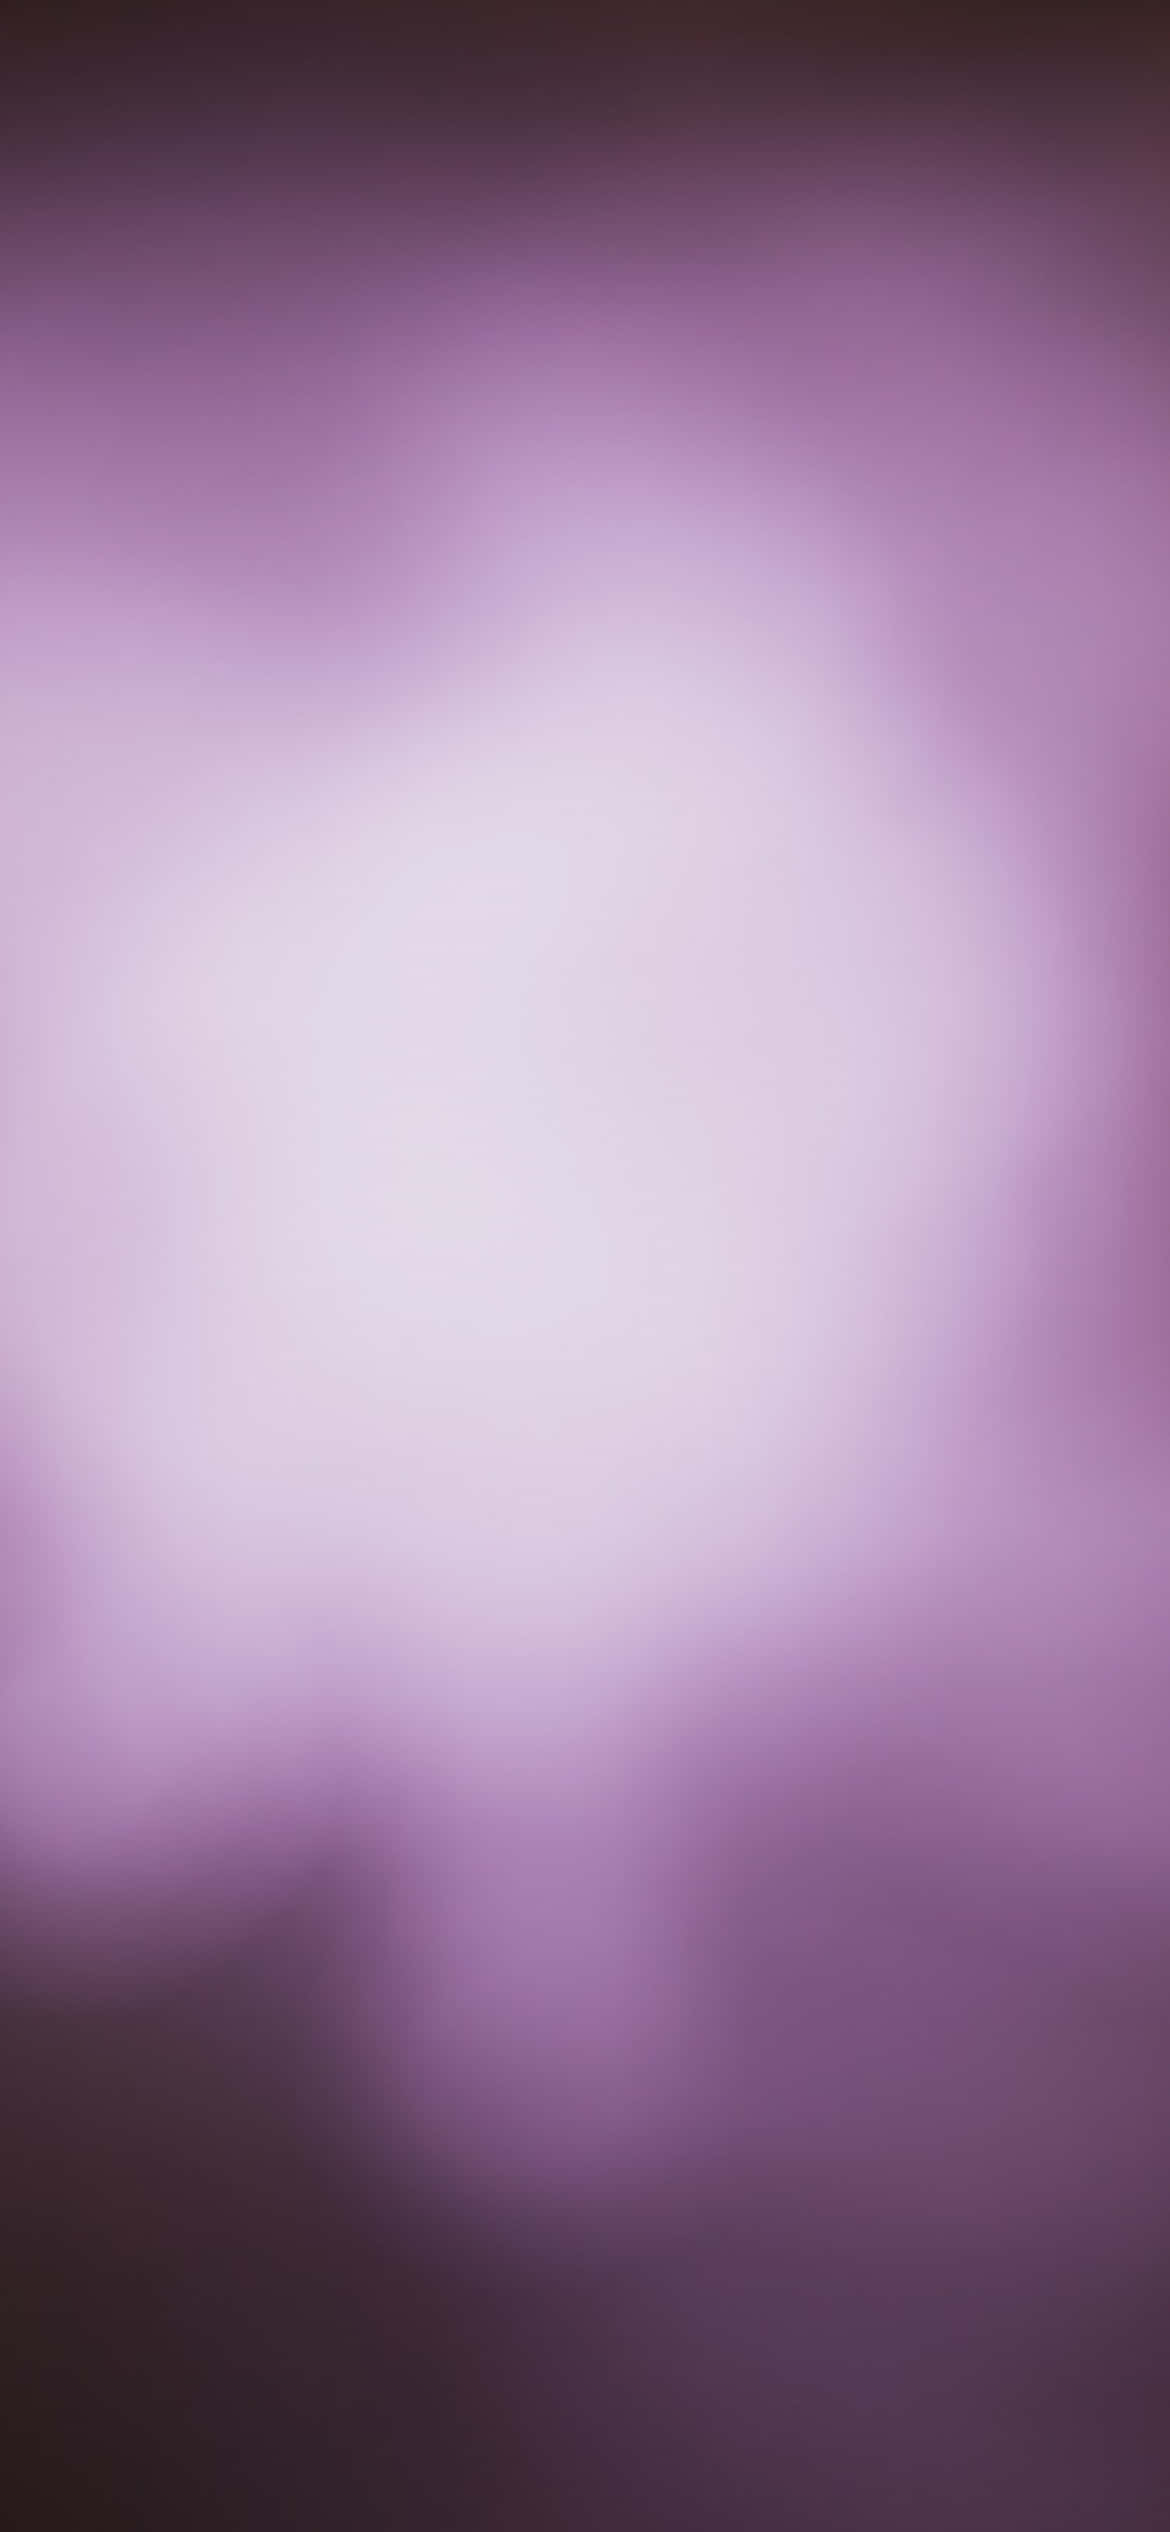 Enjoy epic purple hues against a scenic landscape Wallpaper